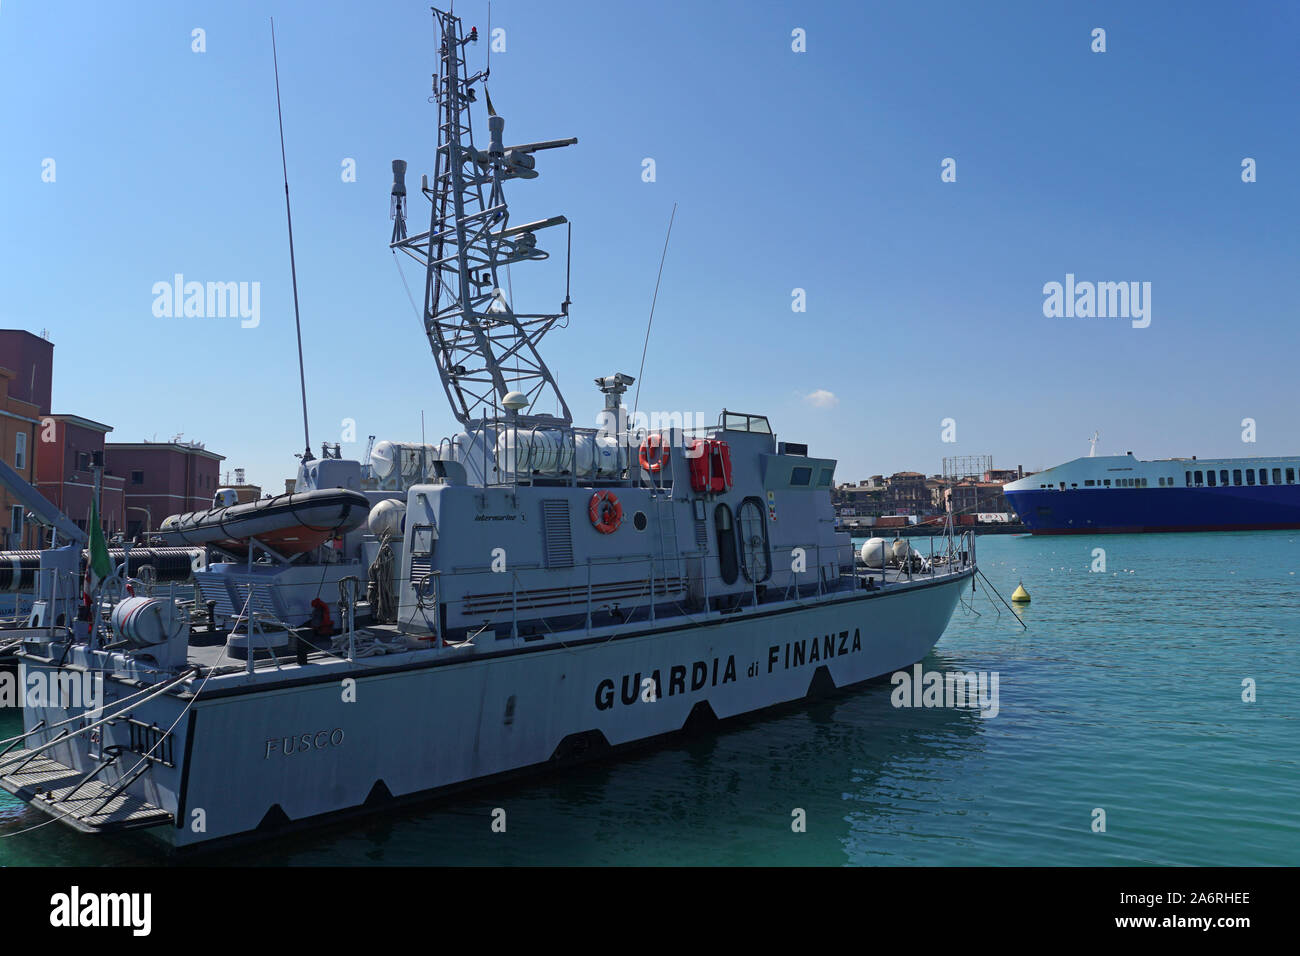 Une réponse rapide bateau de la Guardia di Finanza italienne, l'organisme d'application de la loi du ministère de l'économie et des finances Banque D'Images